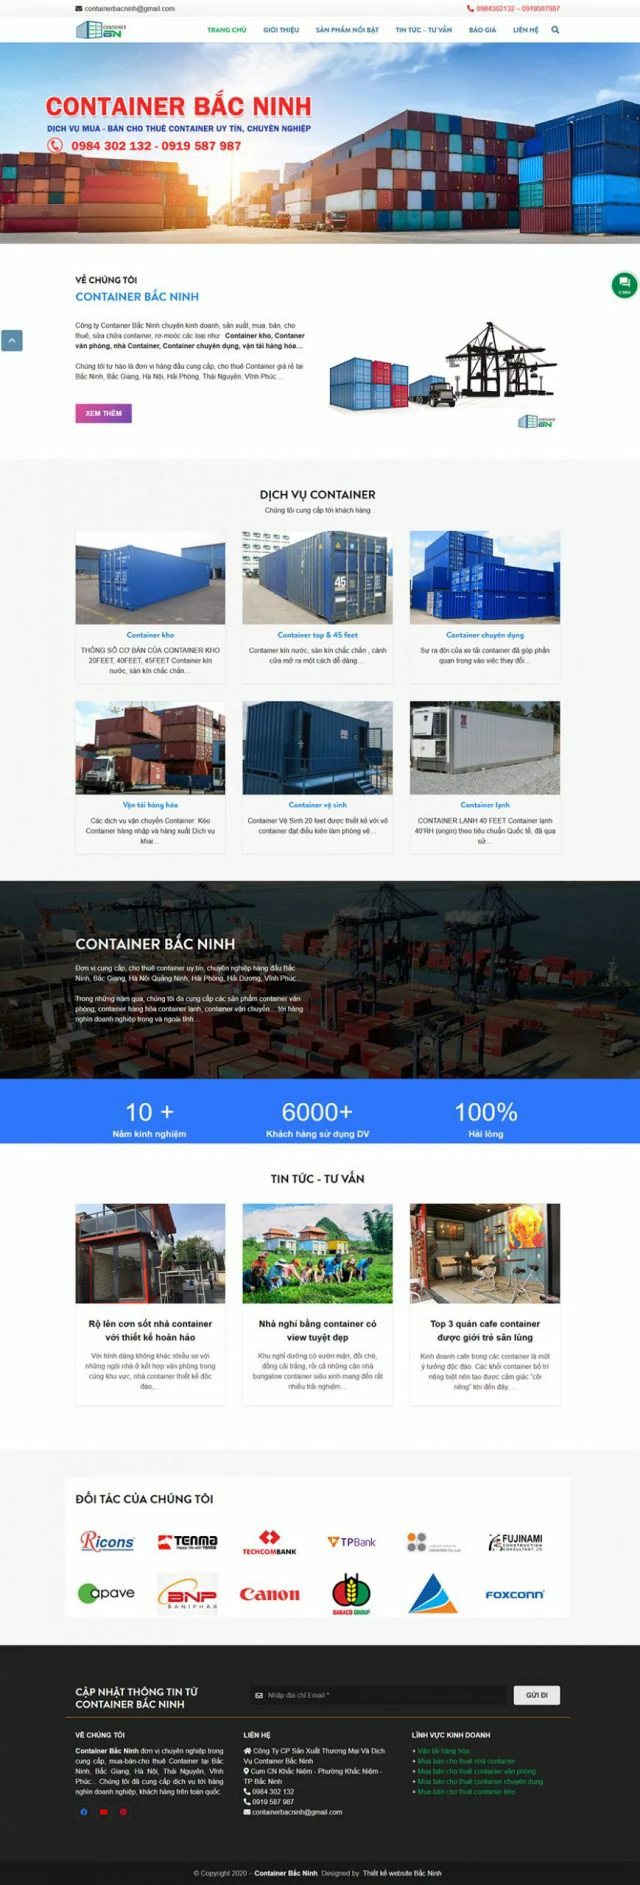 Website dịch vụ cho thuê container tại Bắc Ninh